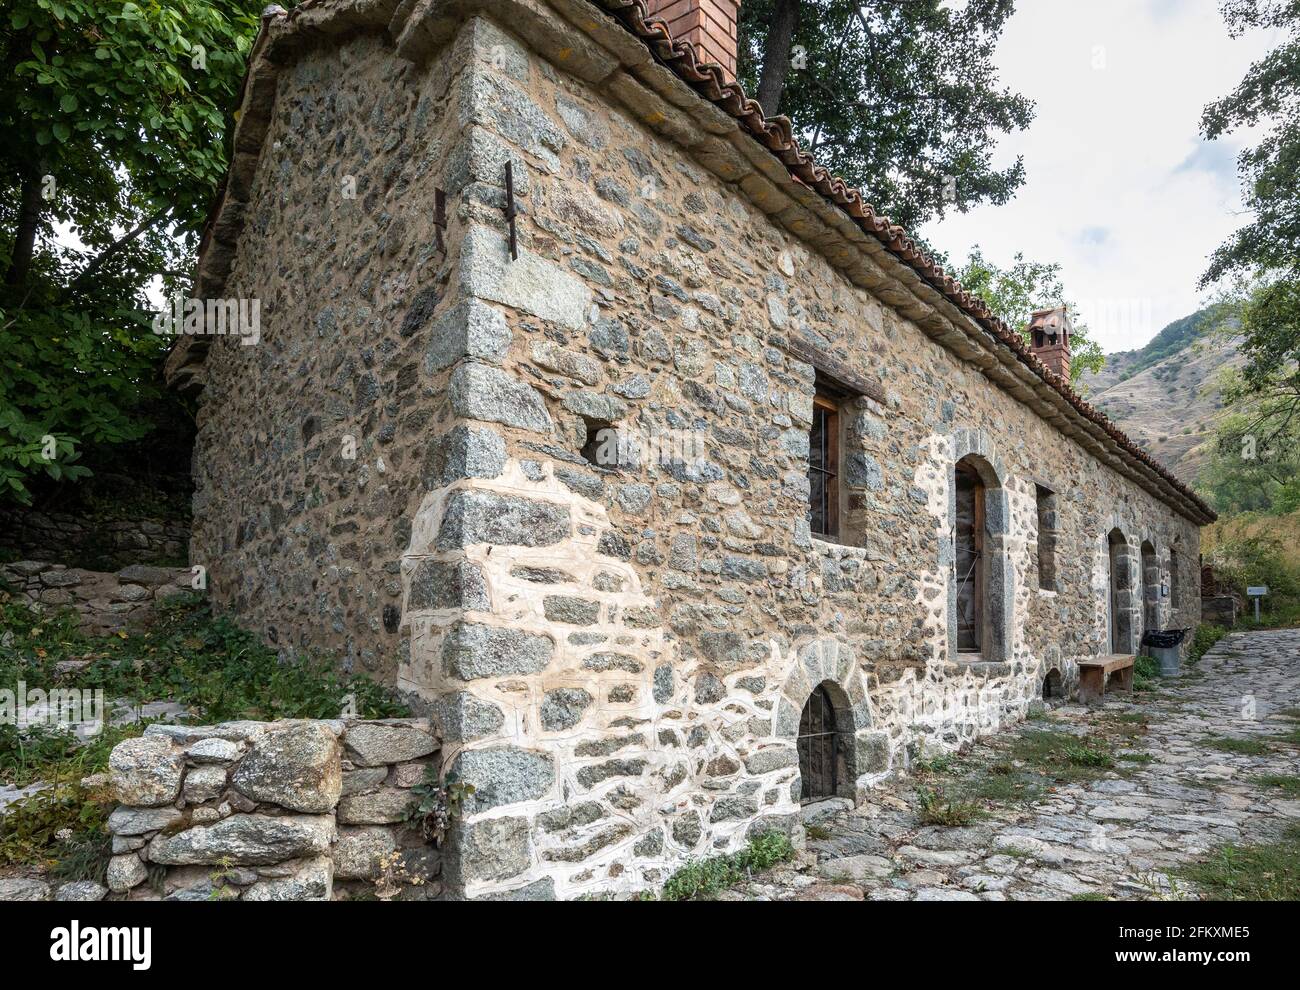 Die alte Mühle im kleinen Dorf Agios Germanos in der Nähe des Prespa-Sees in der Gemeinde Prespes, Mazedonien, Nordgriechenland. Stockfoto